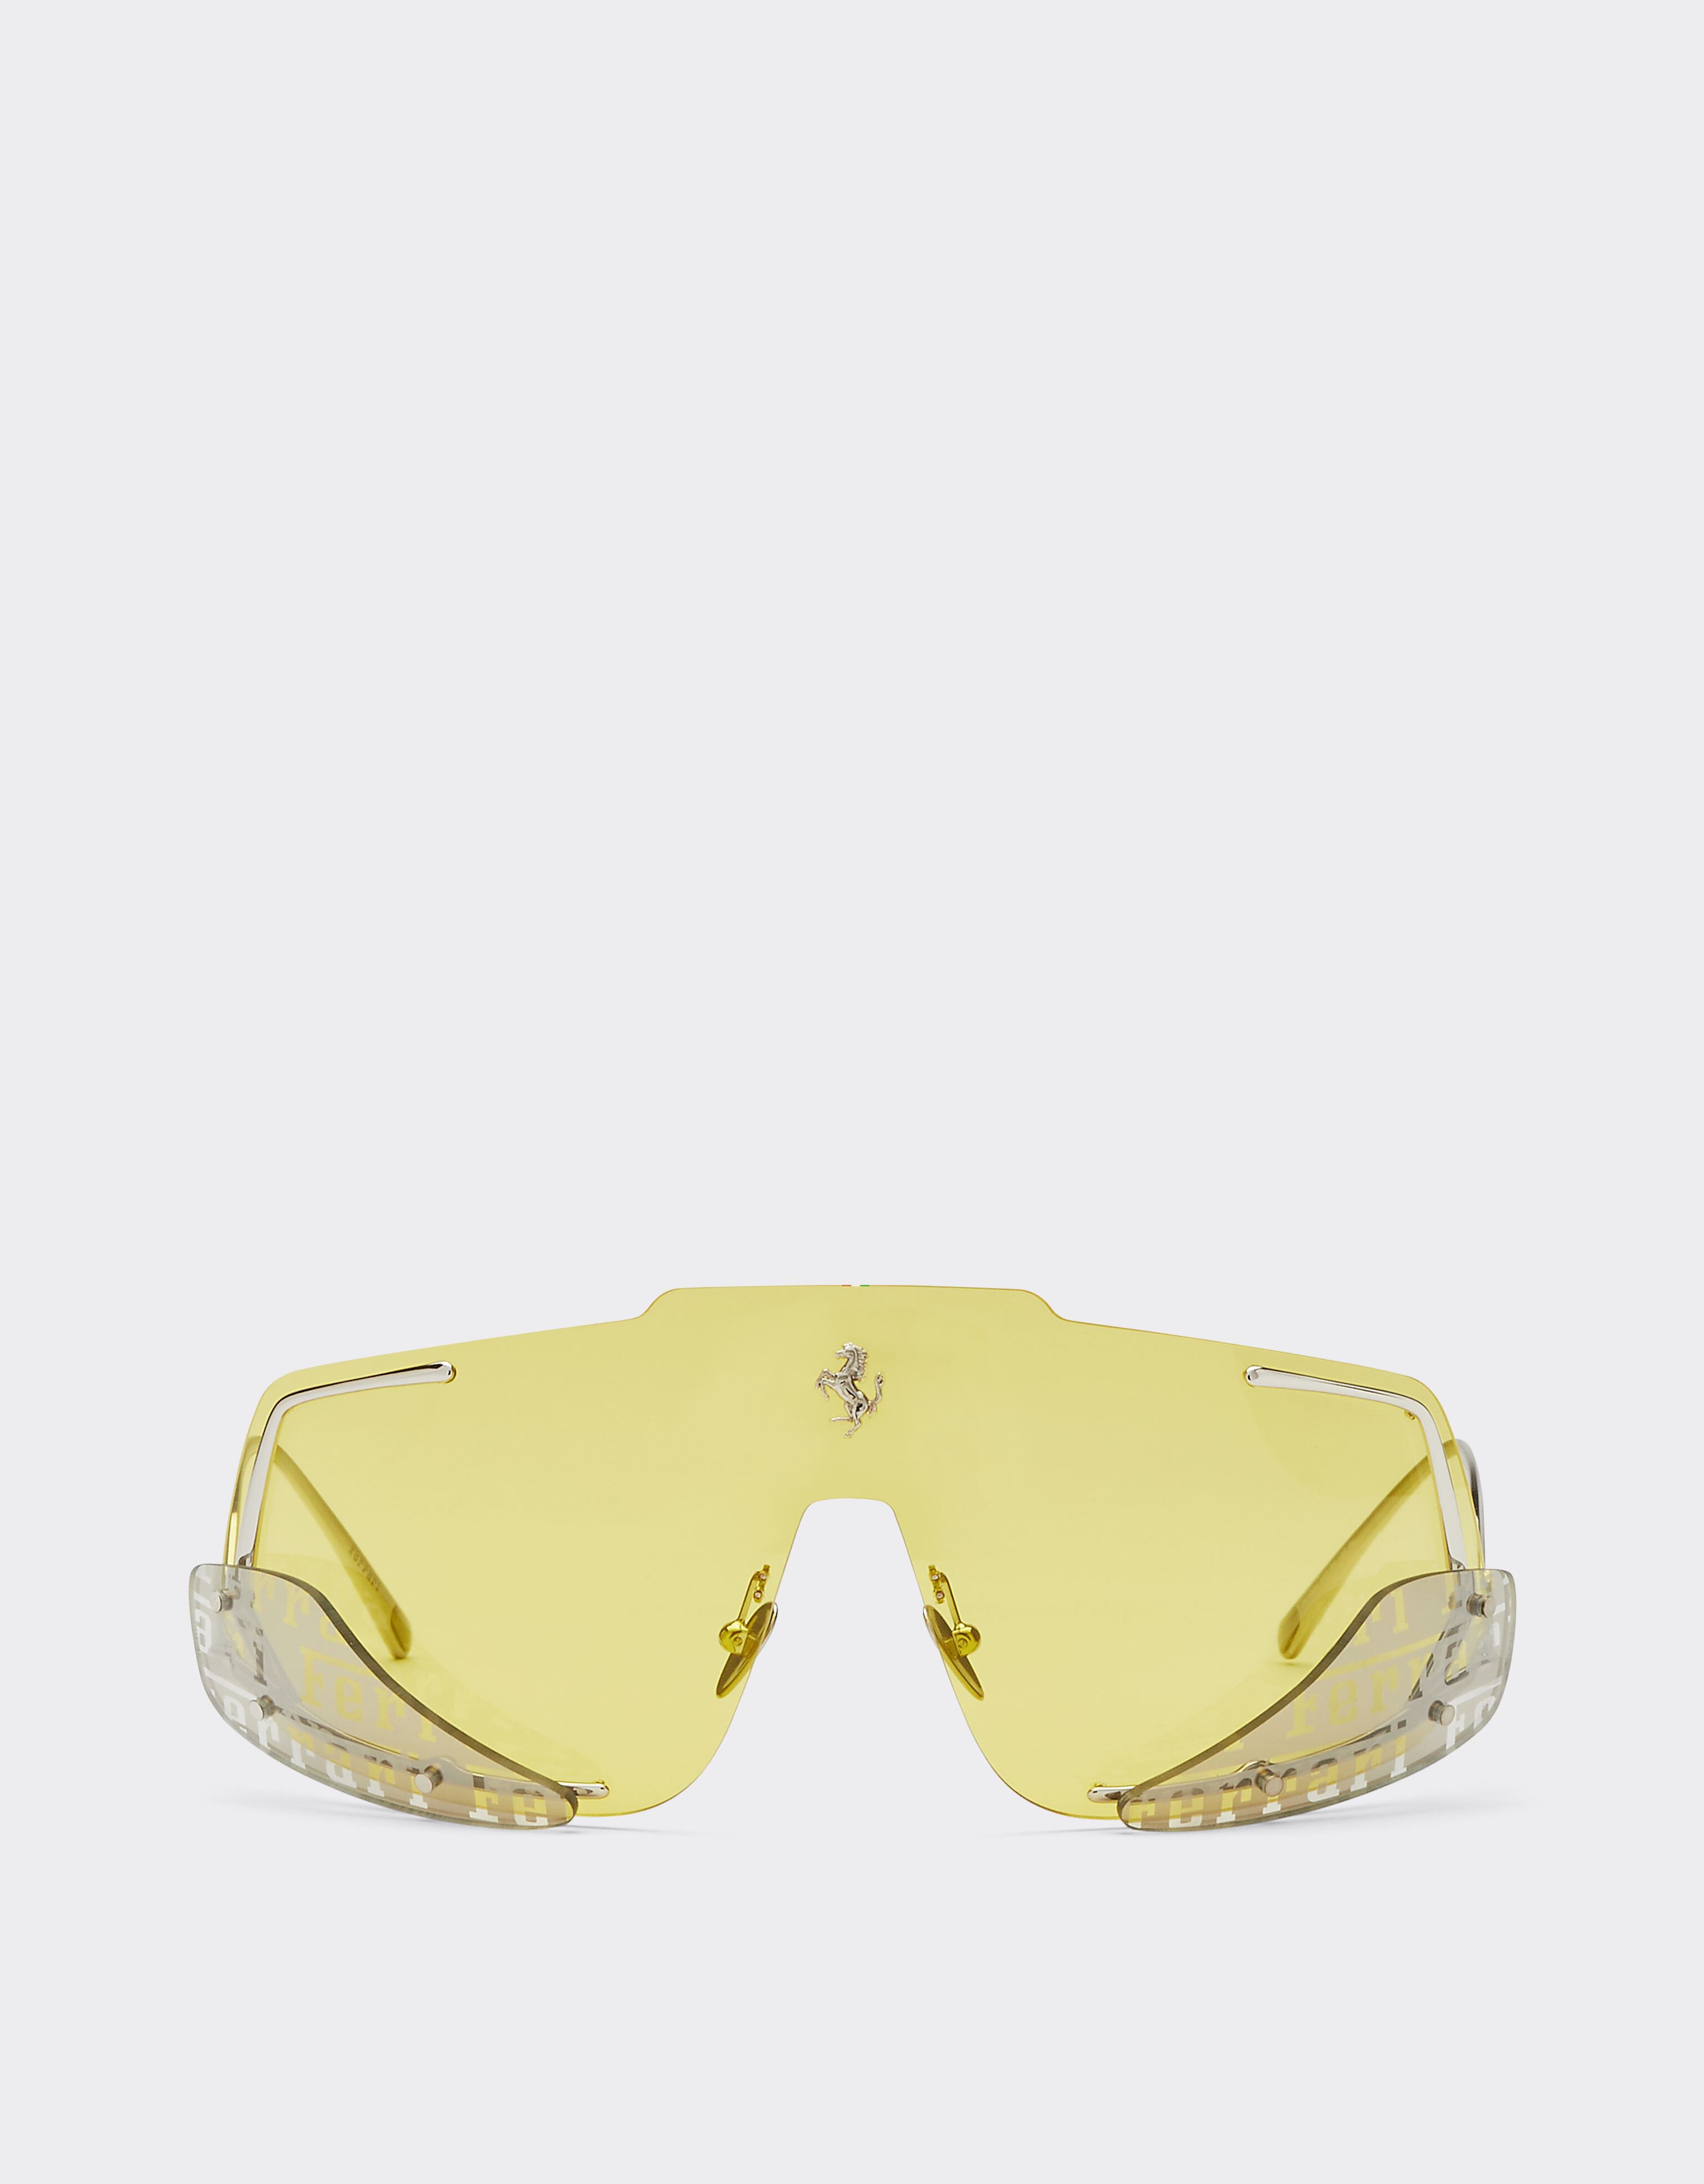 Ferrari 法拉利黄色镜片太阳镜 黑色 F1201f